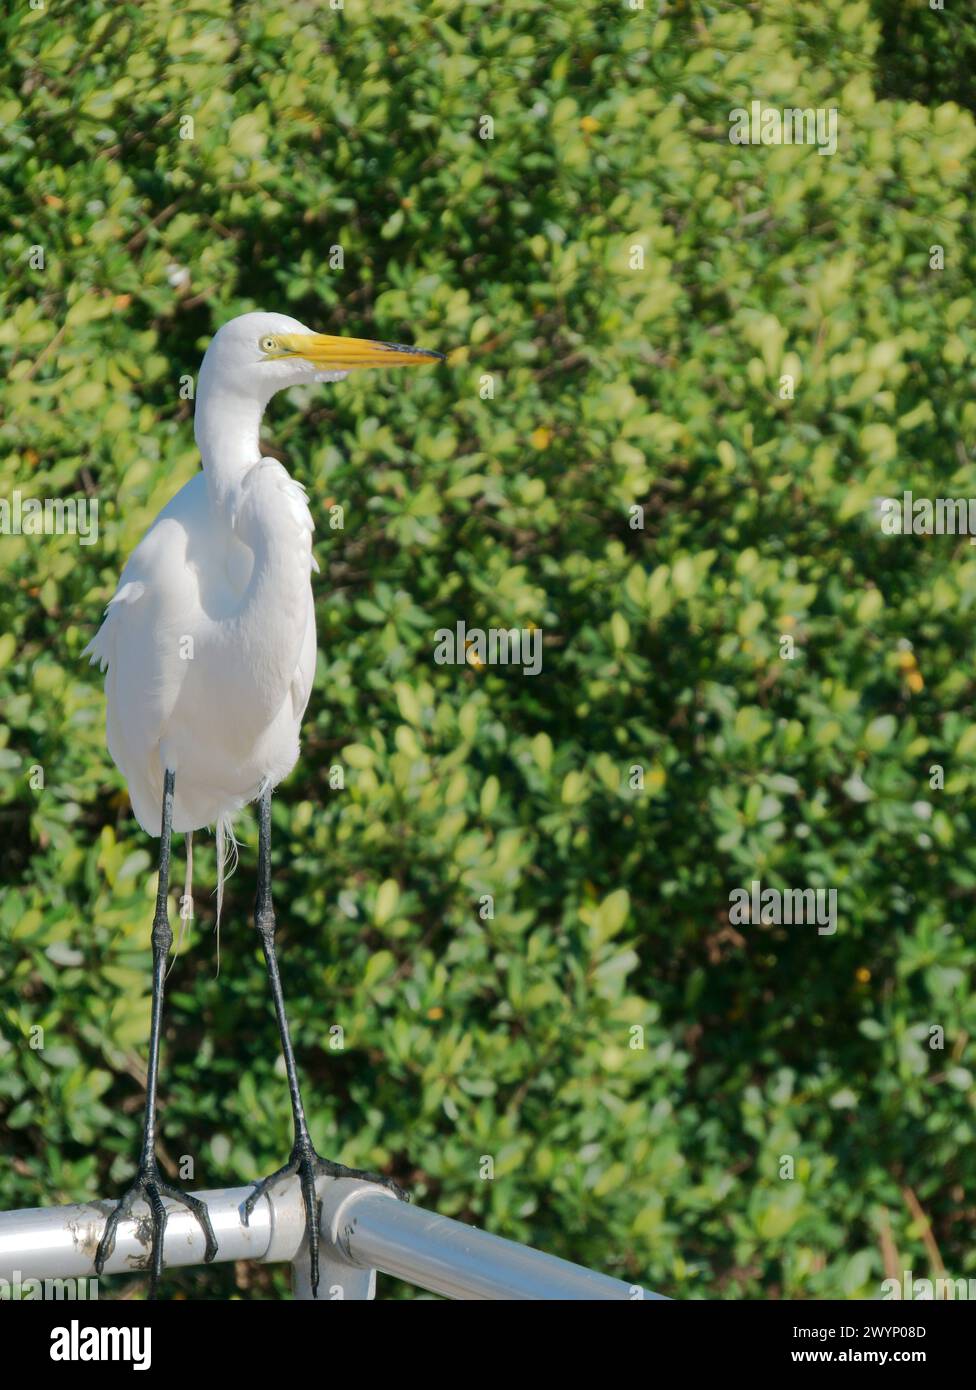 Vista verticale collo curvo White egret arroccato su una guida in metallo che guarda direttamente al Jungle Prada Park. Cespugli verdi sullo sfondo. A St Petersburg, Florida Foto Stock